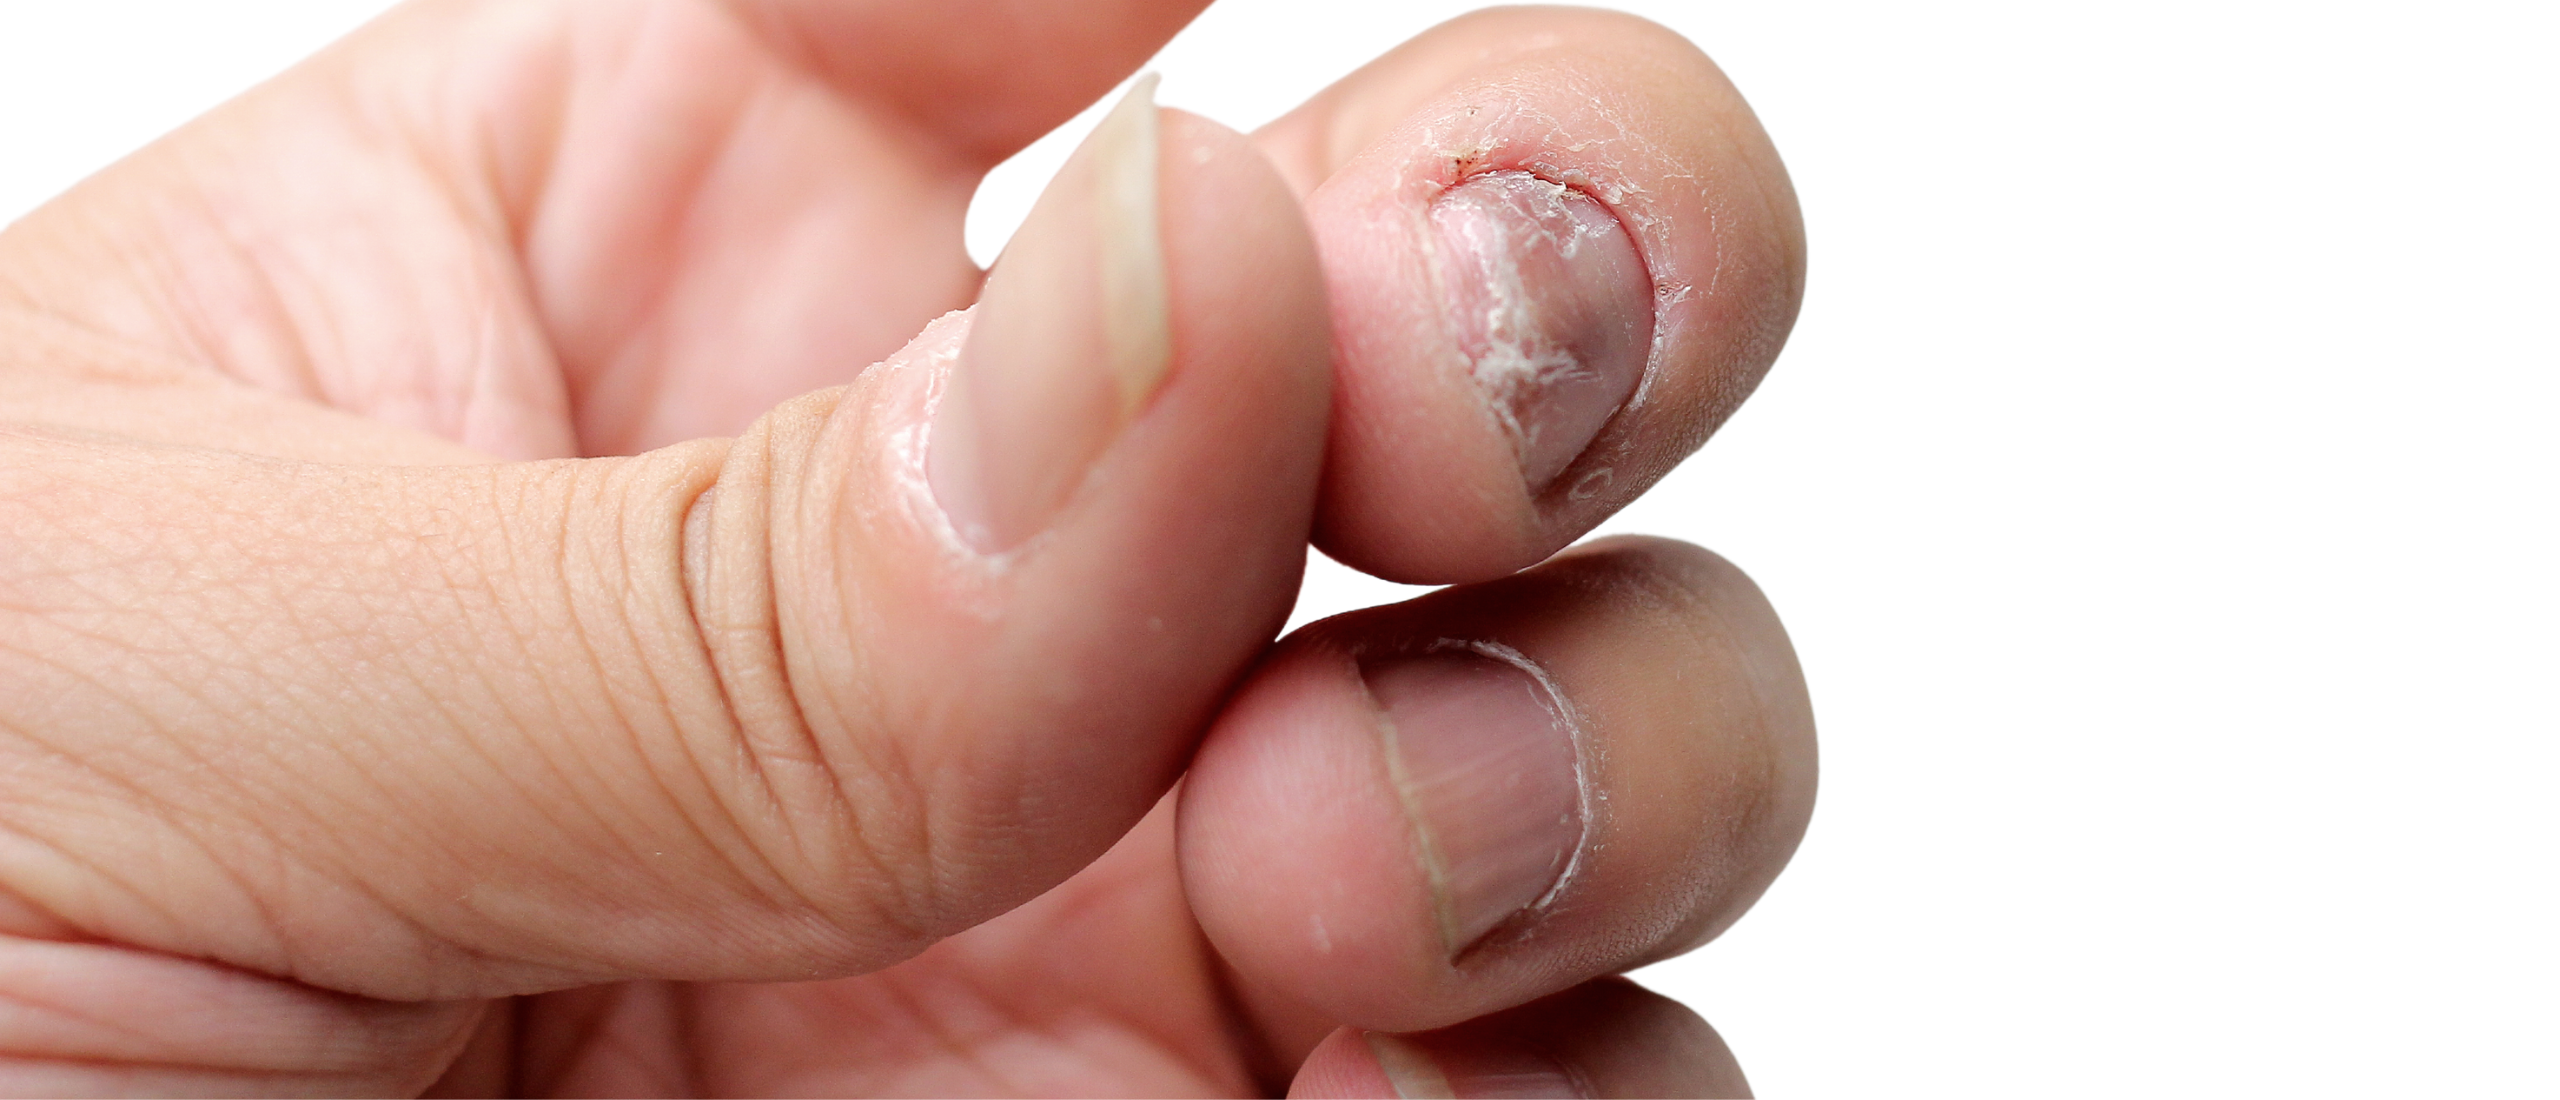 Psoriasis nagels: verkleurde nagels met deukjes